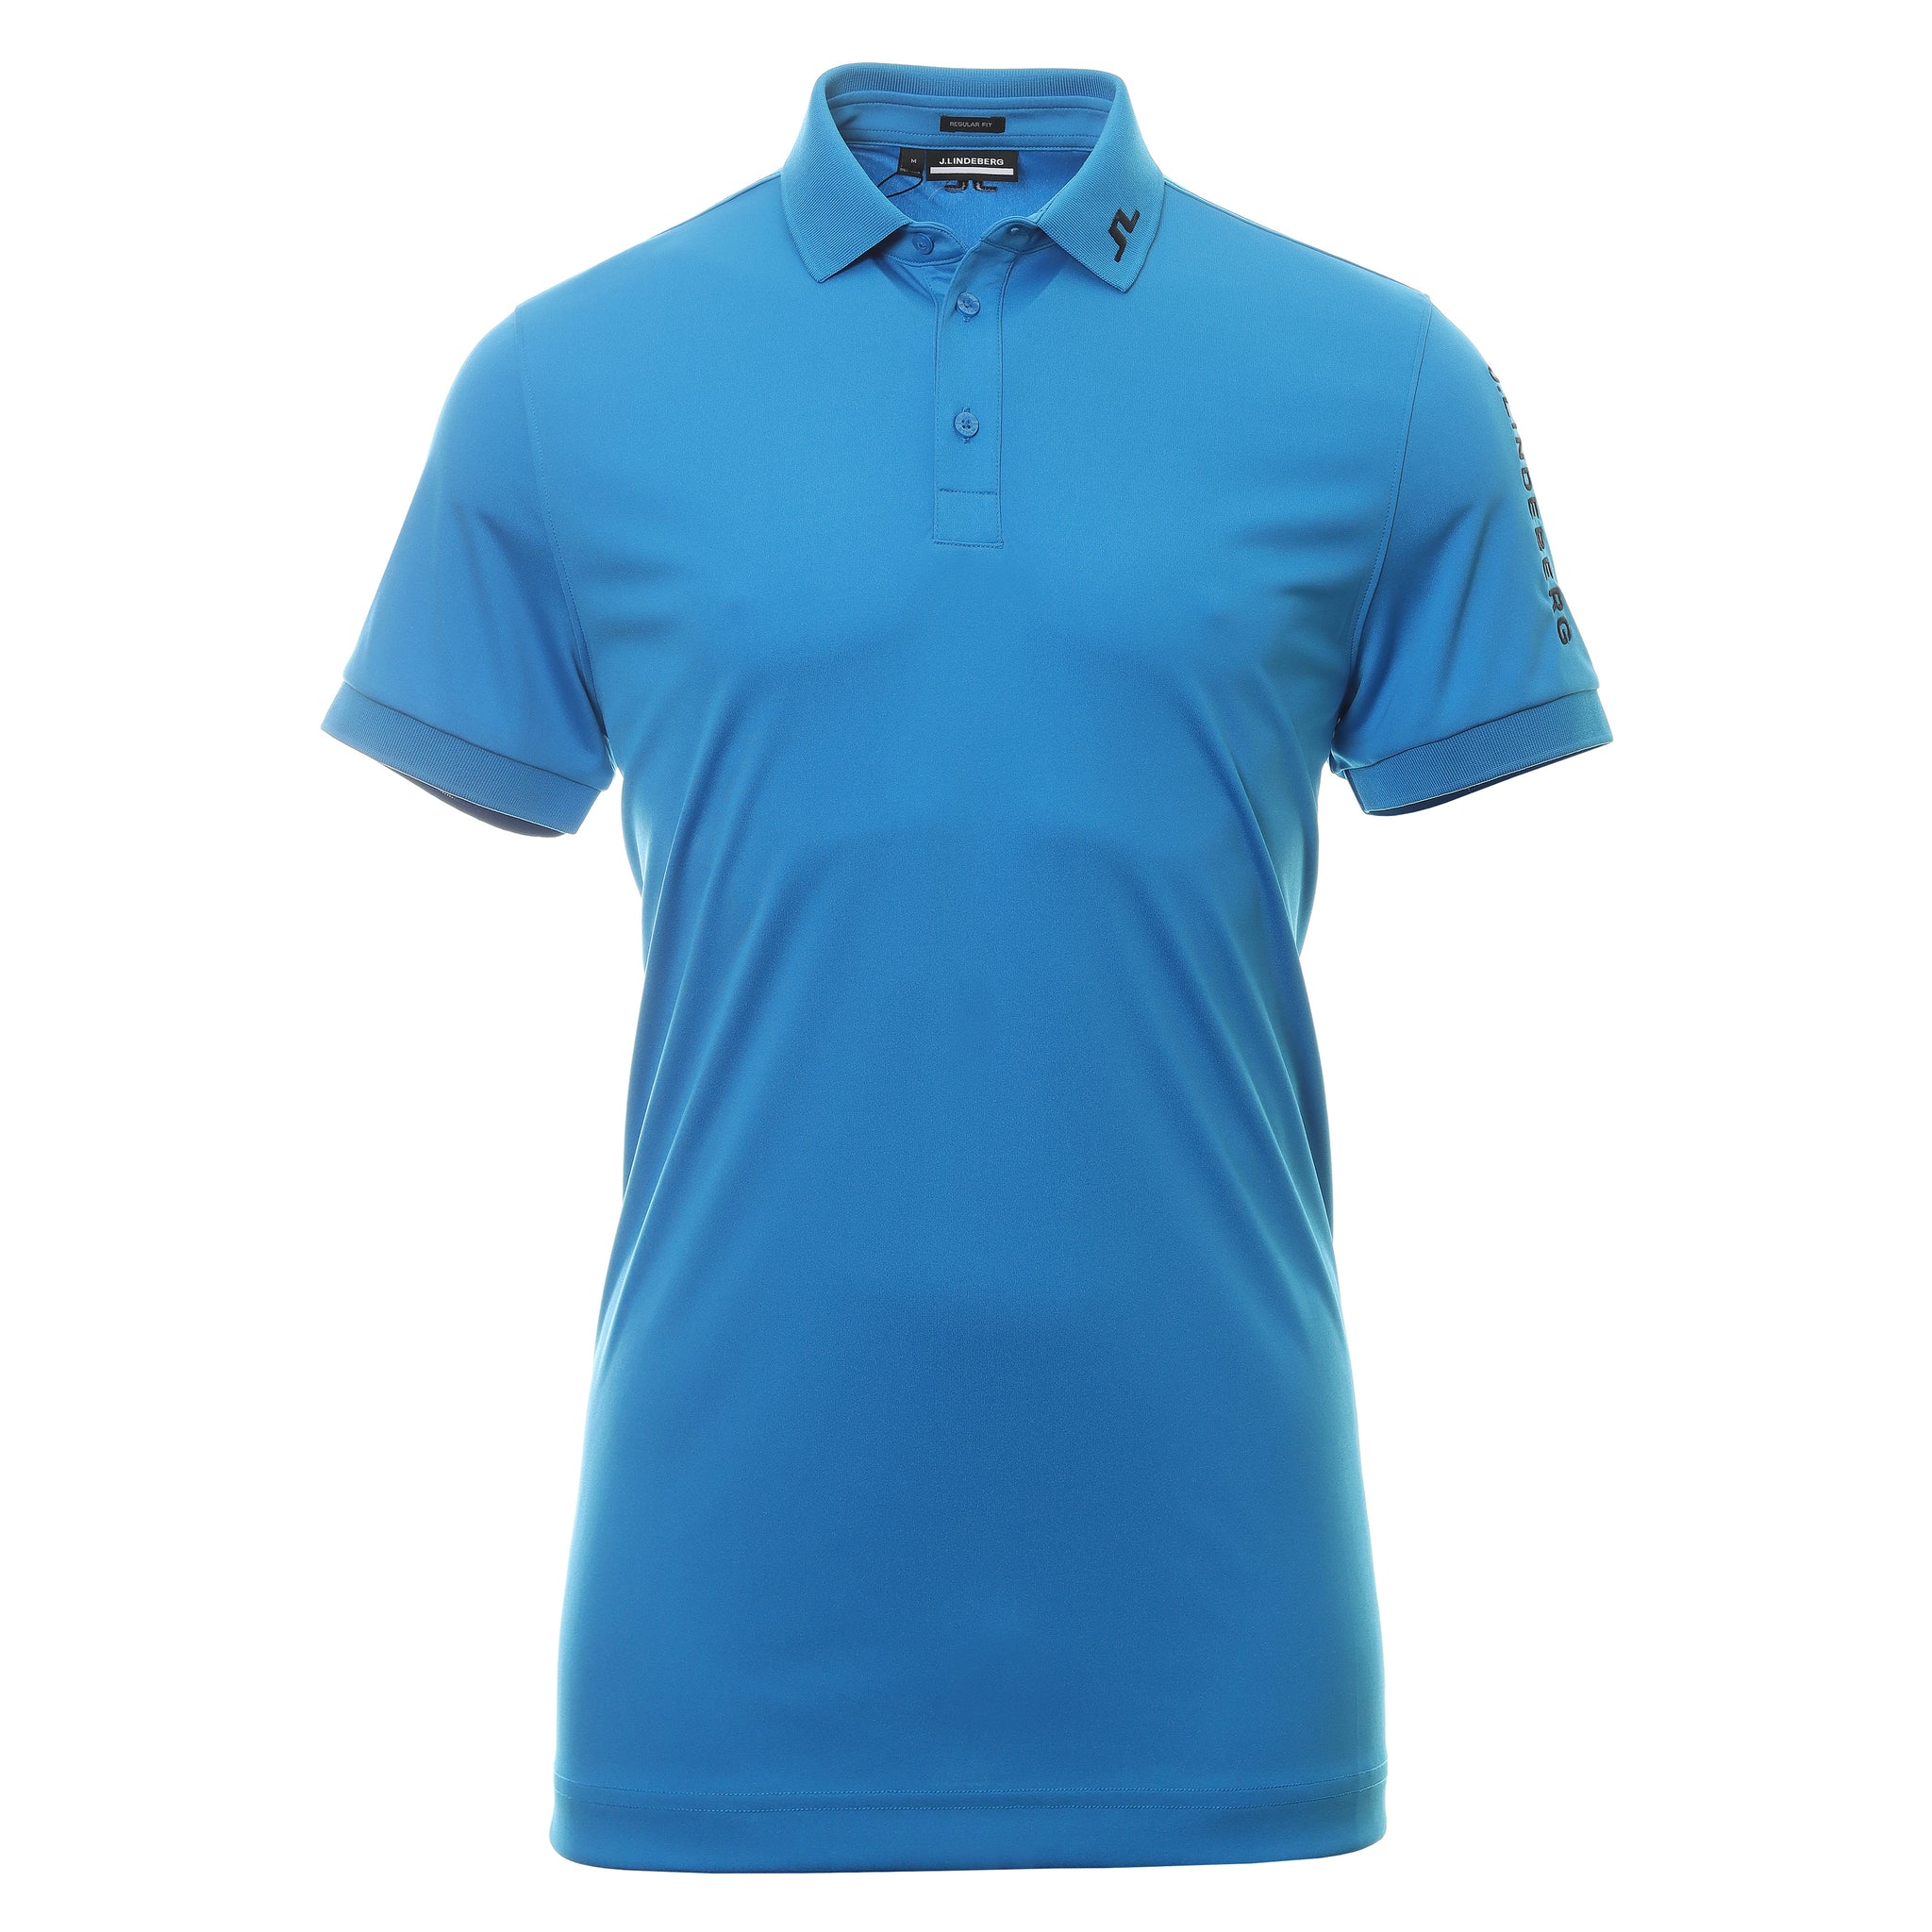 J.Lindeberg Golf Tour Tech Polo Shirt GMJT07642 Brilliant Blue O175 ...